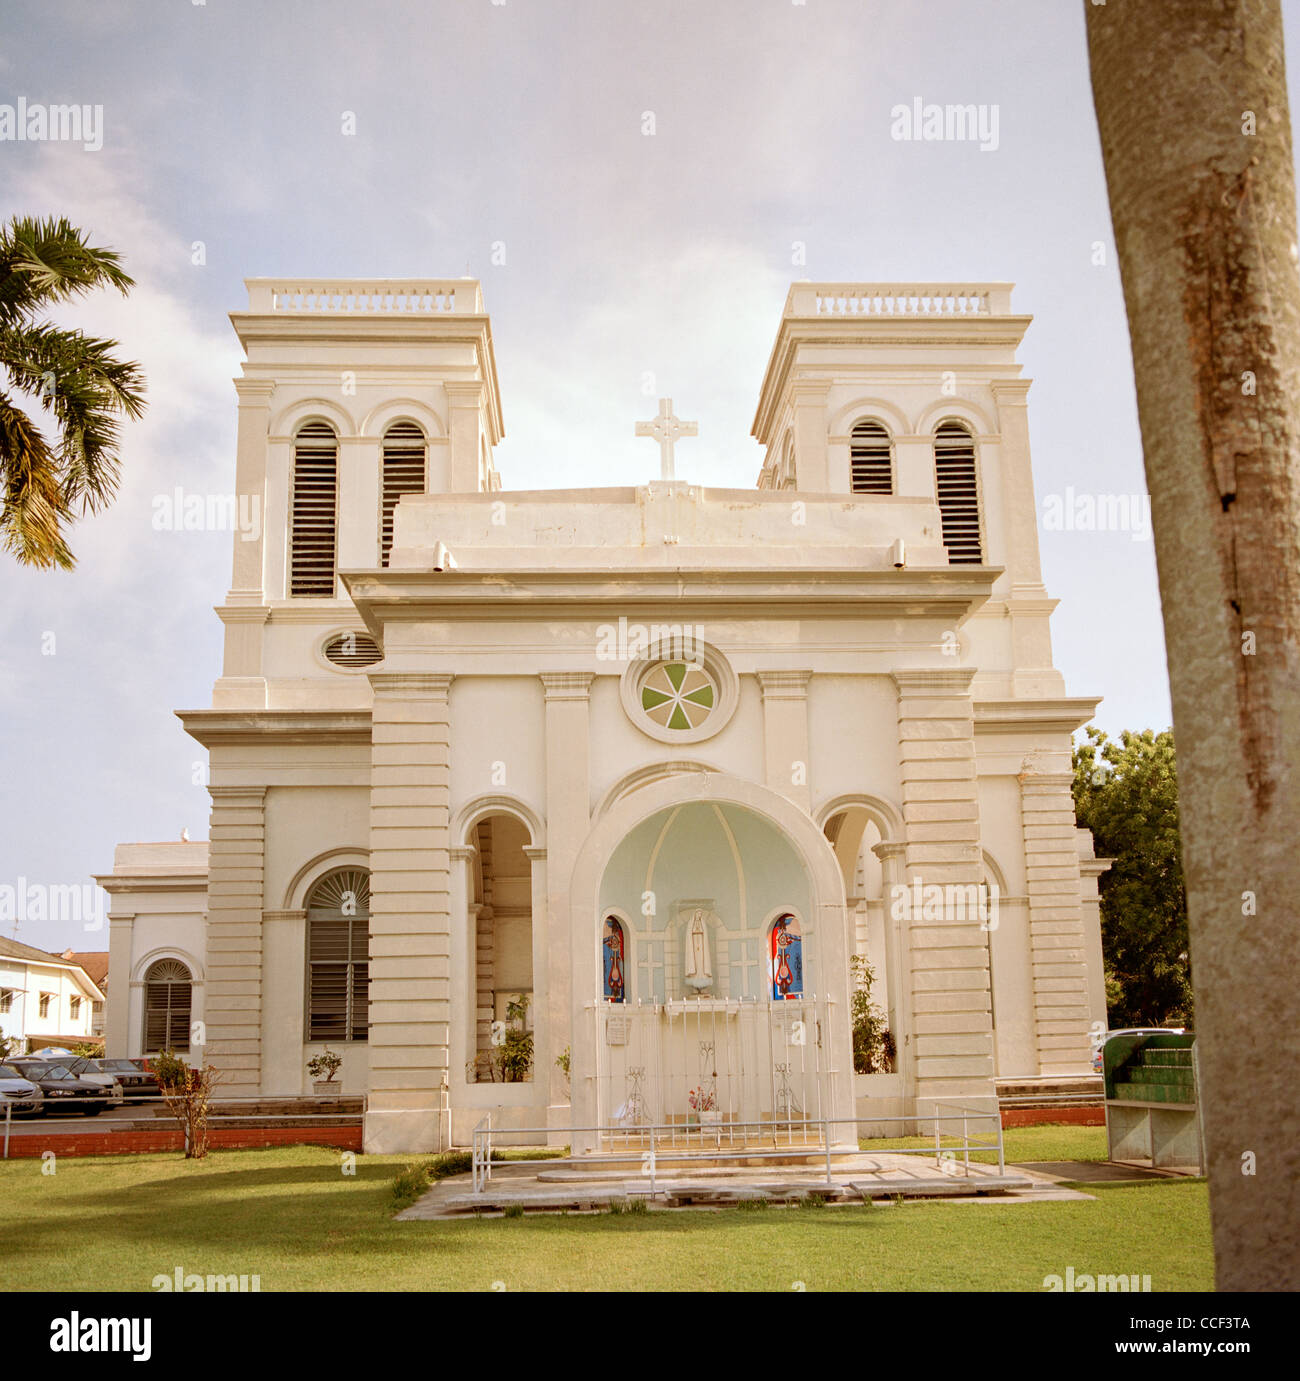 L'Église catholique de l'Assomption à George Town dans l'île de Penang en Malaisie en Extrême-Orient Asie du sud-est. Le christianisme la Religion chrétienne billet Banque D'Images